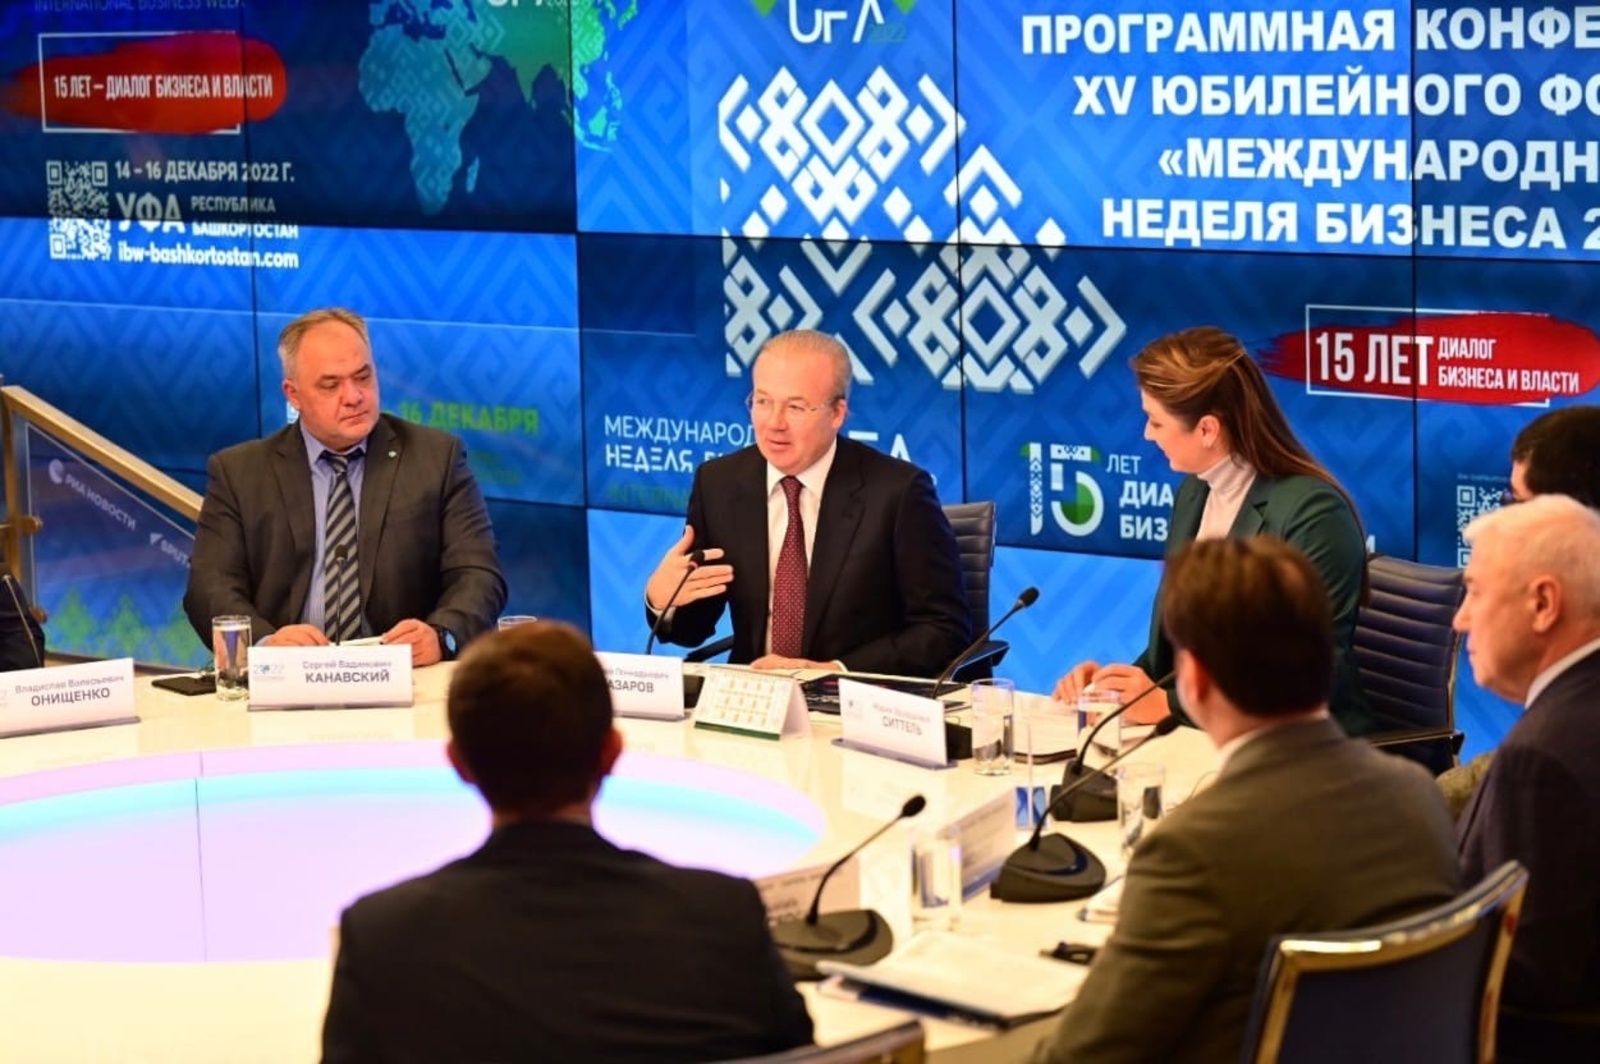 Андрей Назаров: На Международной неделе бизнеса в Уфе подпишут соглашение с Башкирской мясной компанией по строительству агропарка на 25 млрд рублей